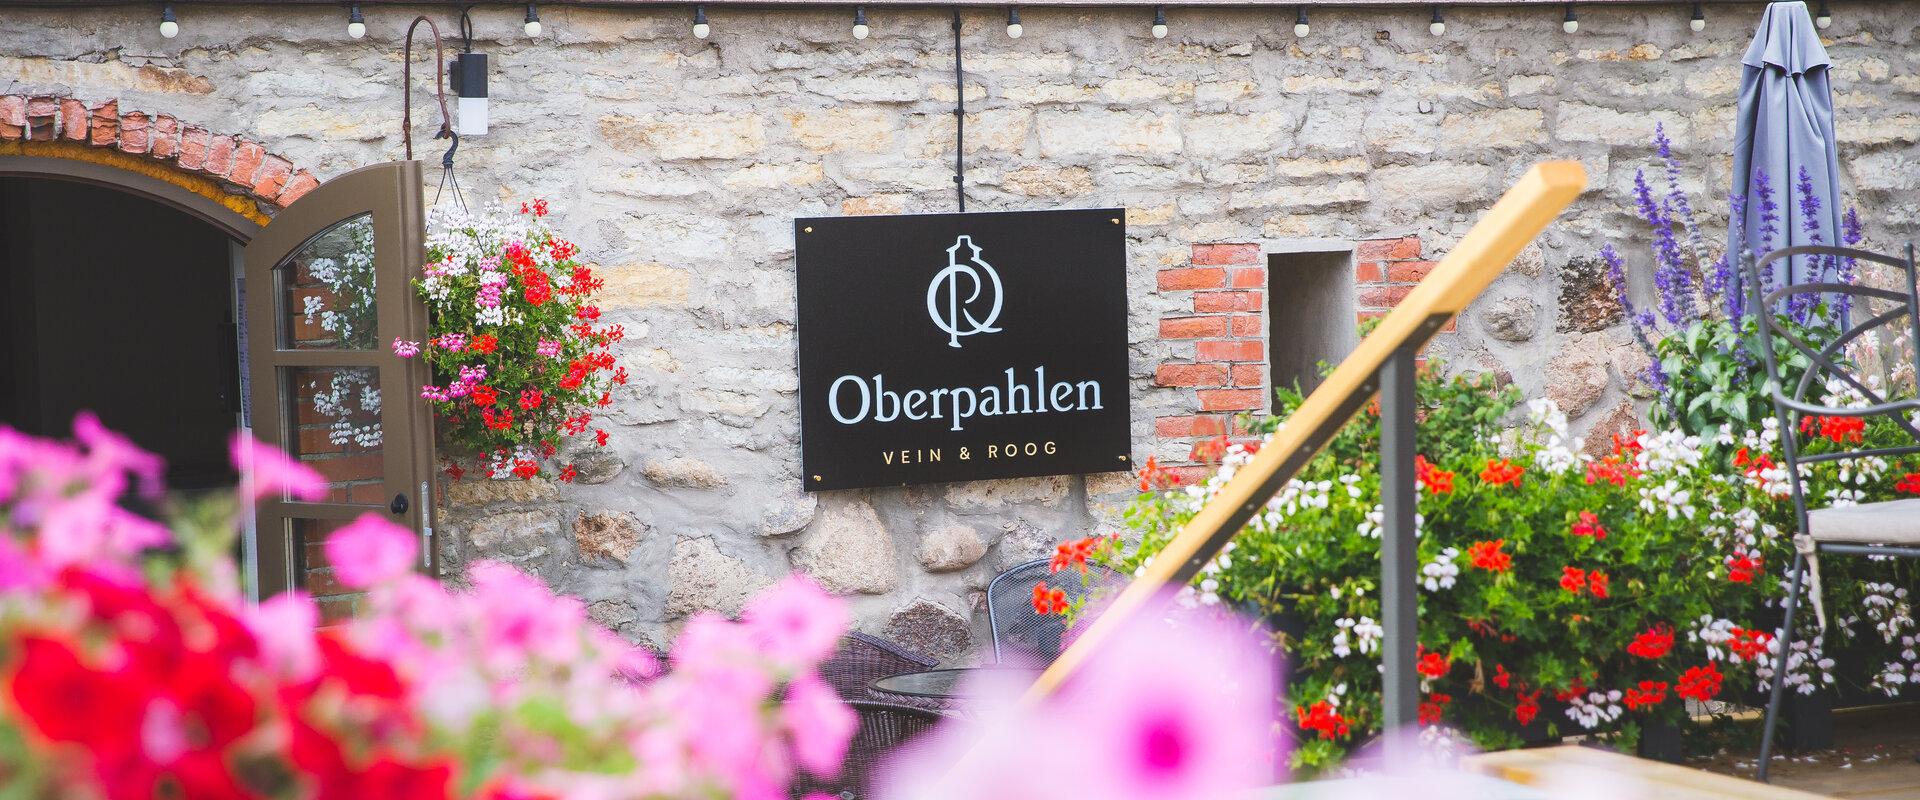 Põltsamaa veinikelder ja restoran Oberpahlen